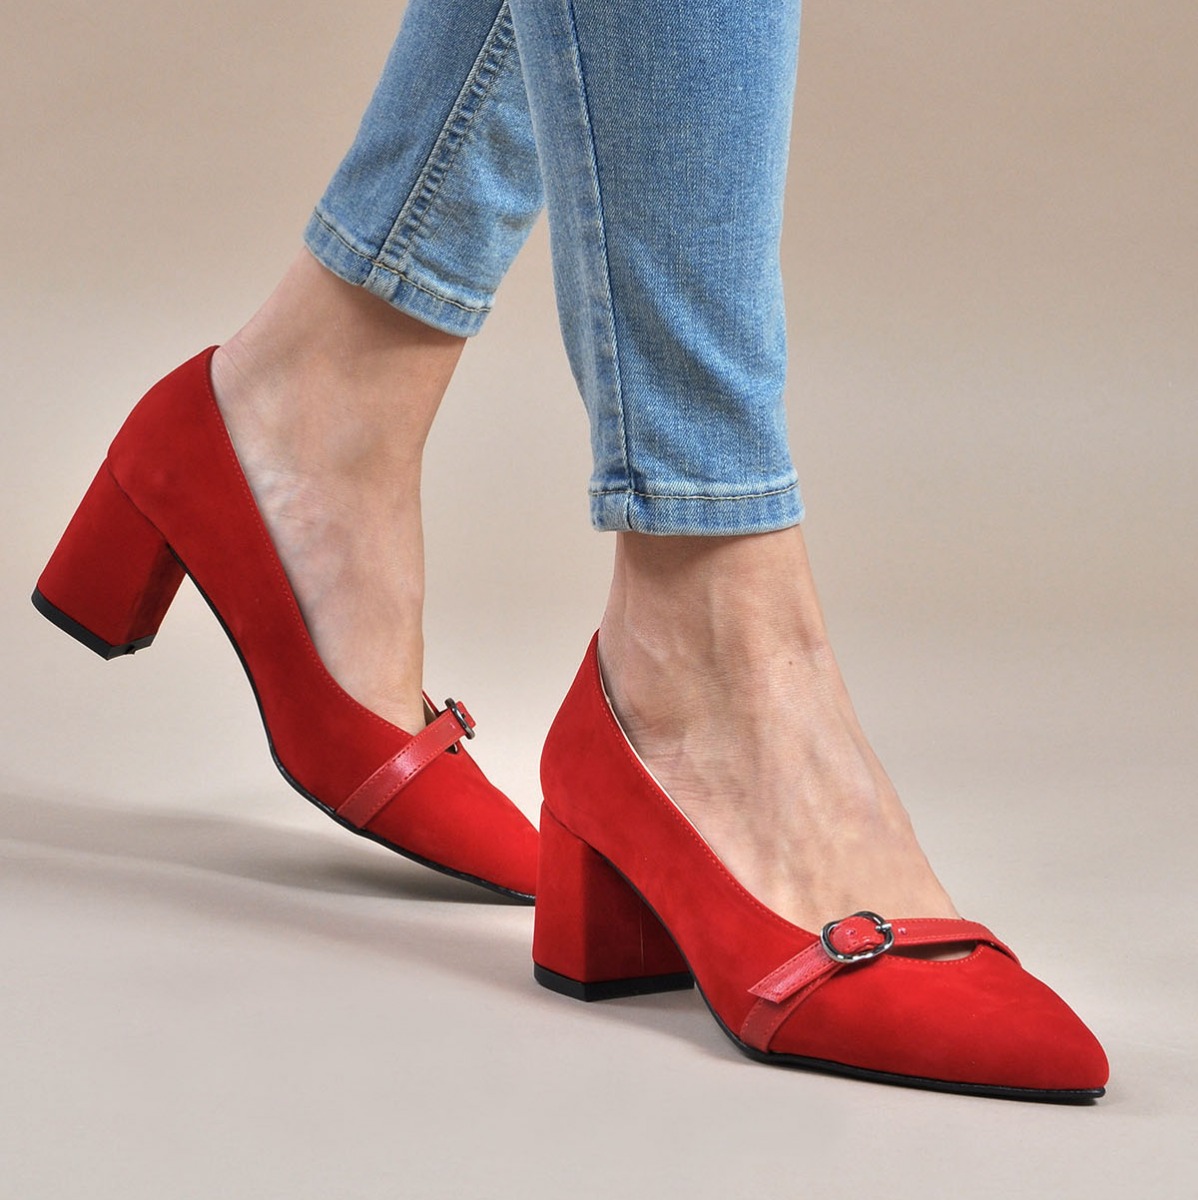 Flo Kadın  Kırmızı-Süet Klasik Topuklu Ayakkabı VZN19-110K. 1